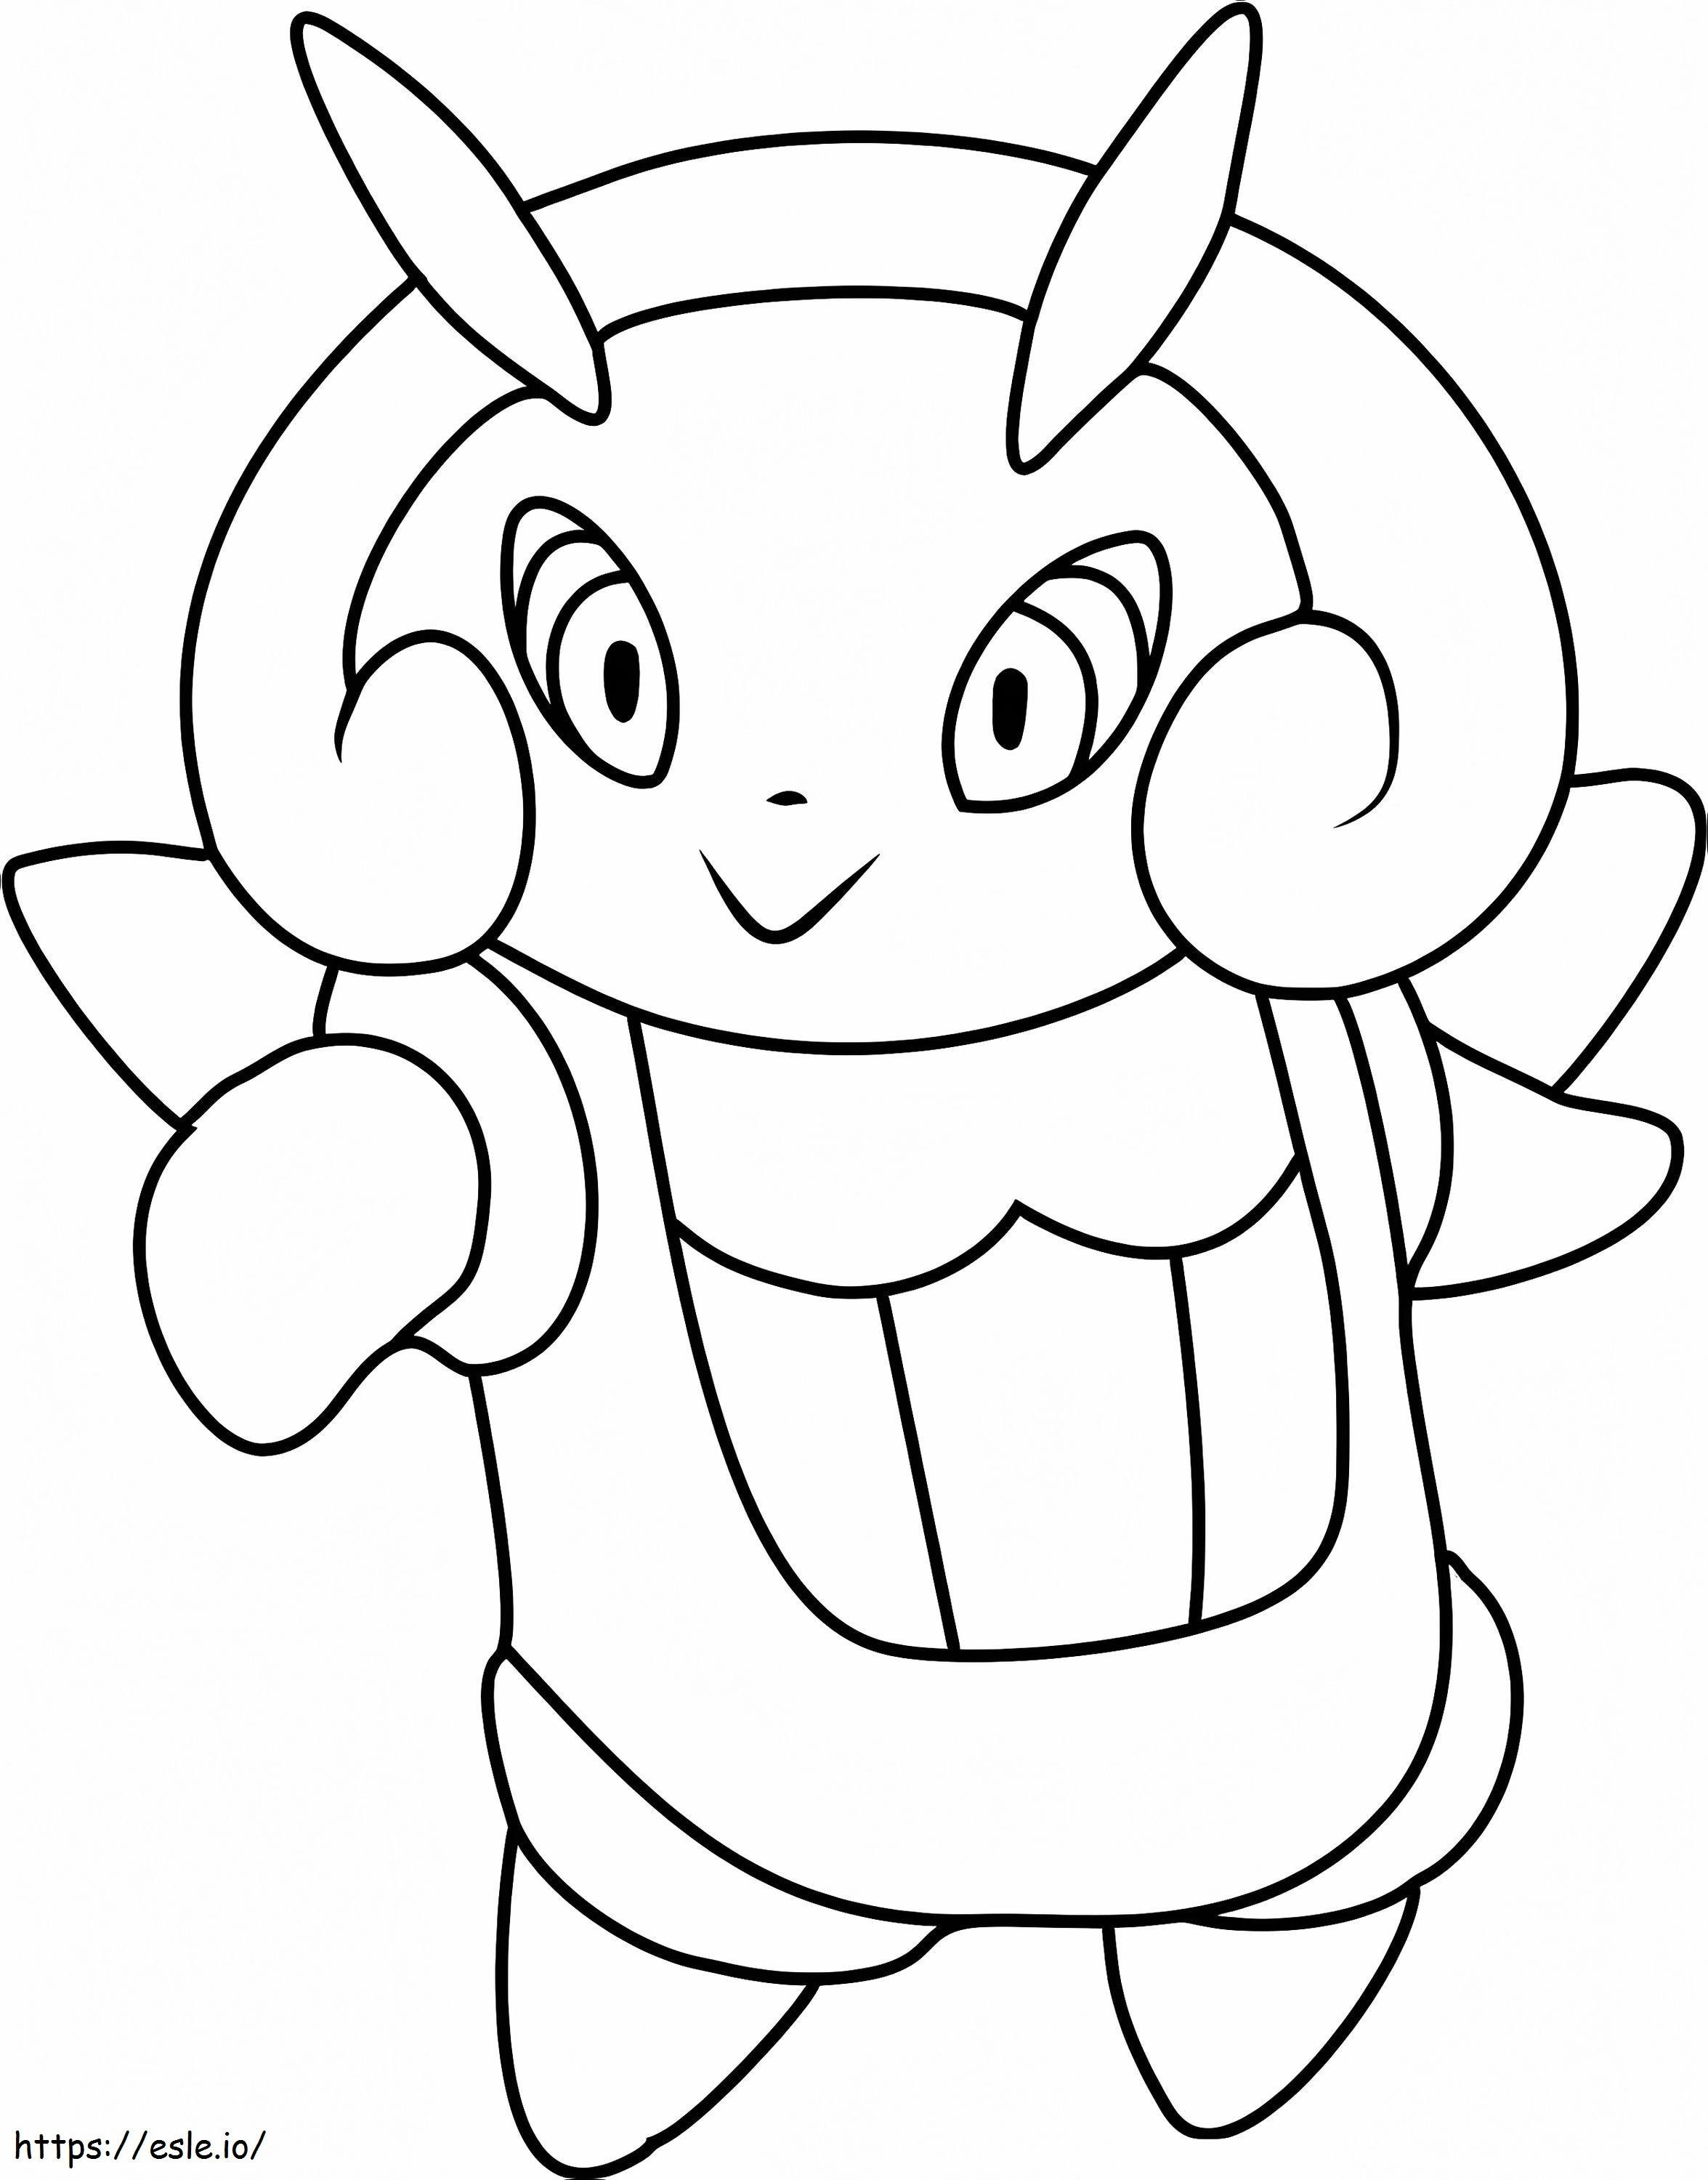 Coloriage Pokémon Illumine Gen 3 à imprimer dessin